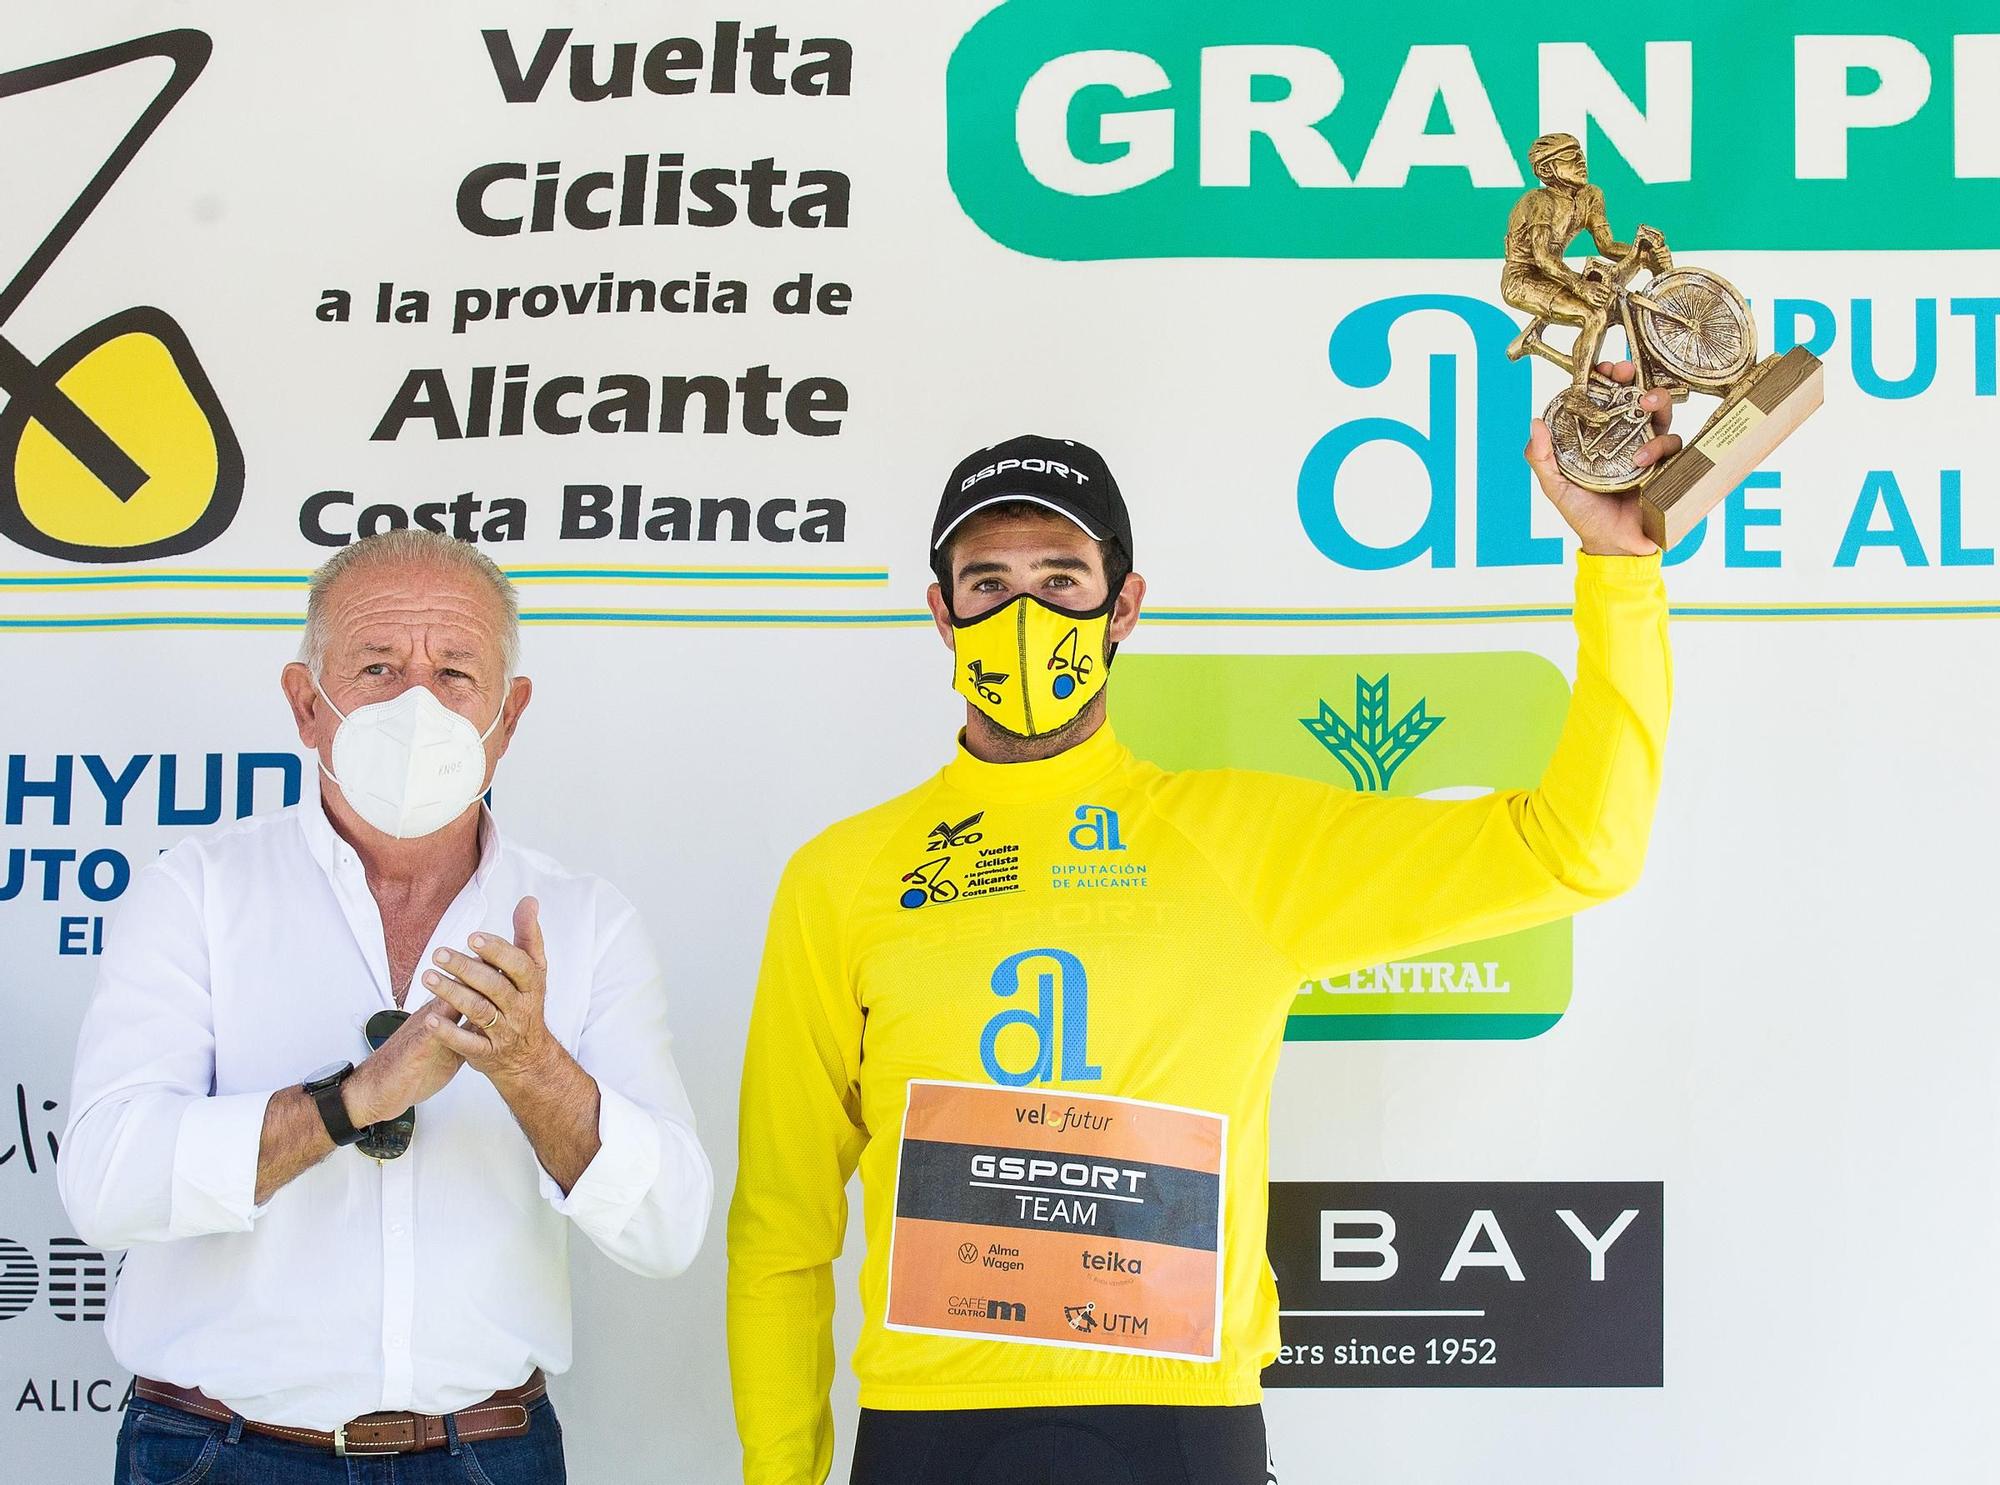 Felipe Orts conquista la Vuelta a la Provincia de Alicante